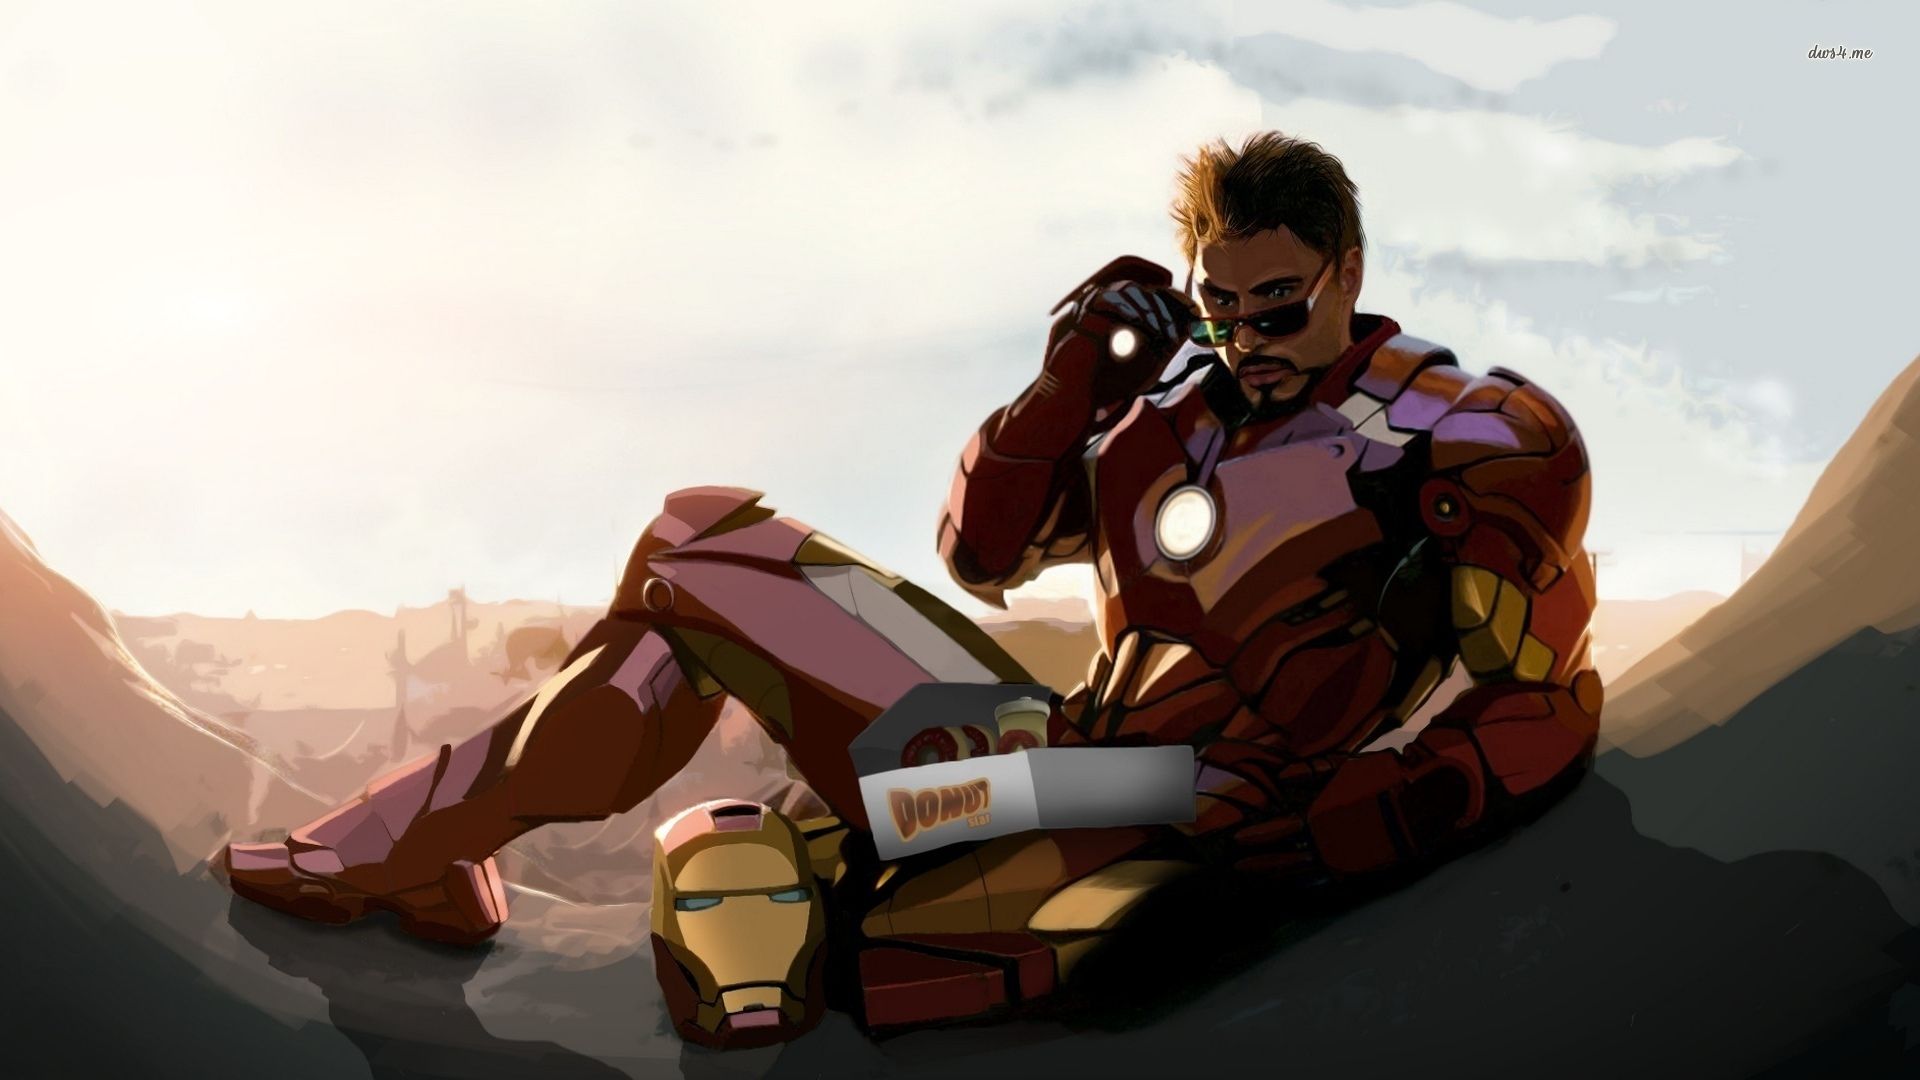 3D Iron Man Wallpaper